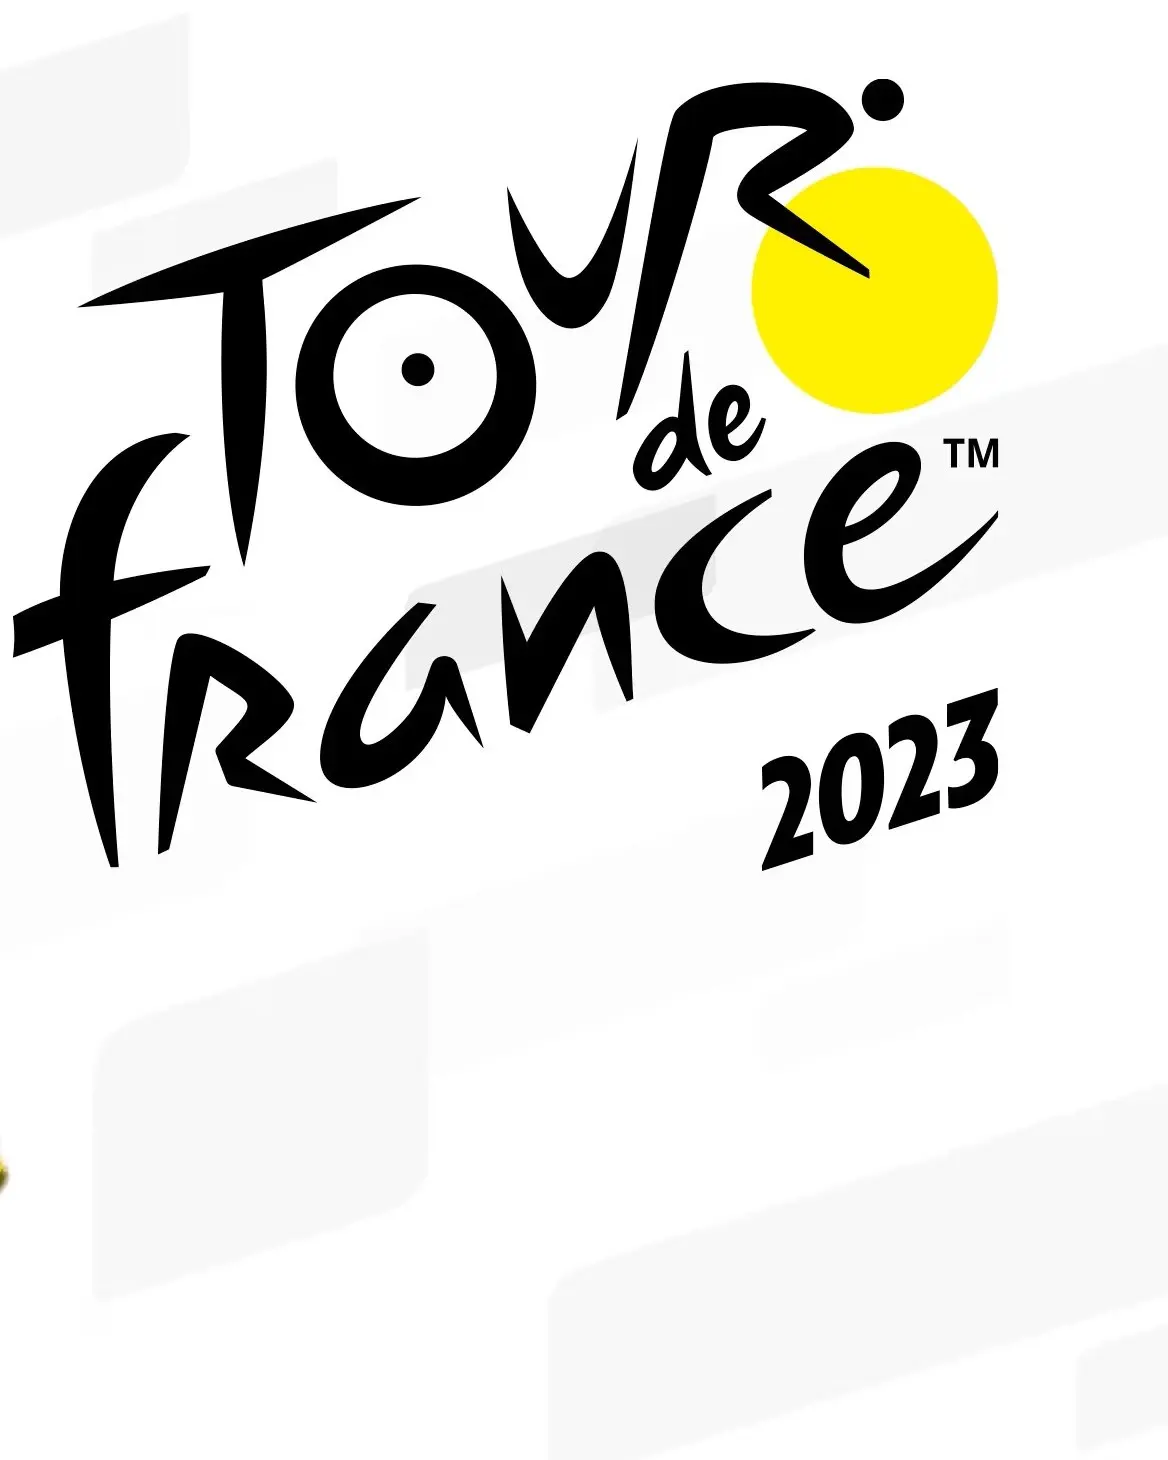 Tour de France 2023 (PC) - Steam - Digital Code